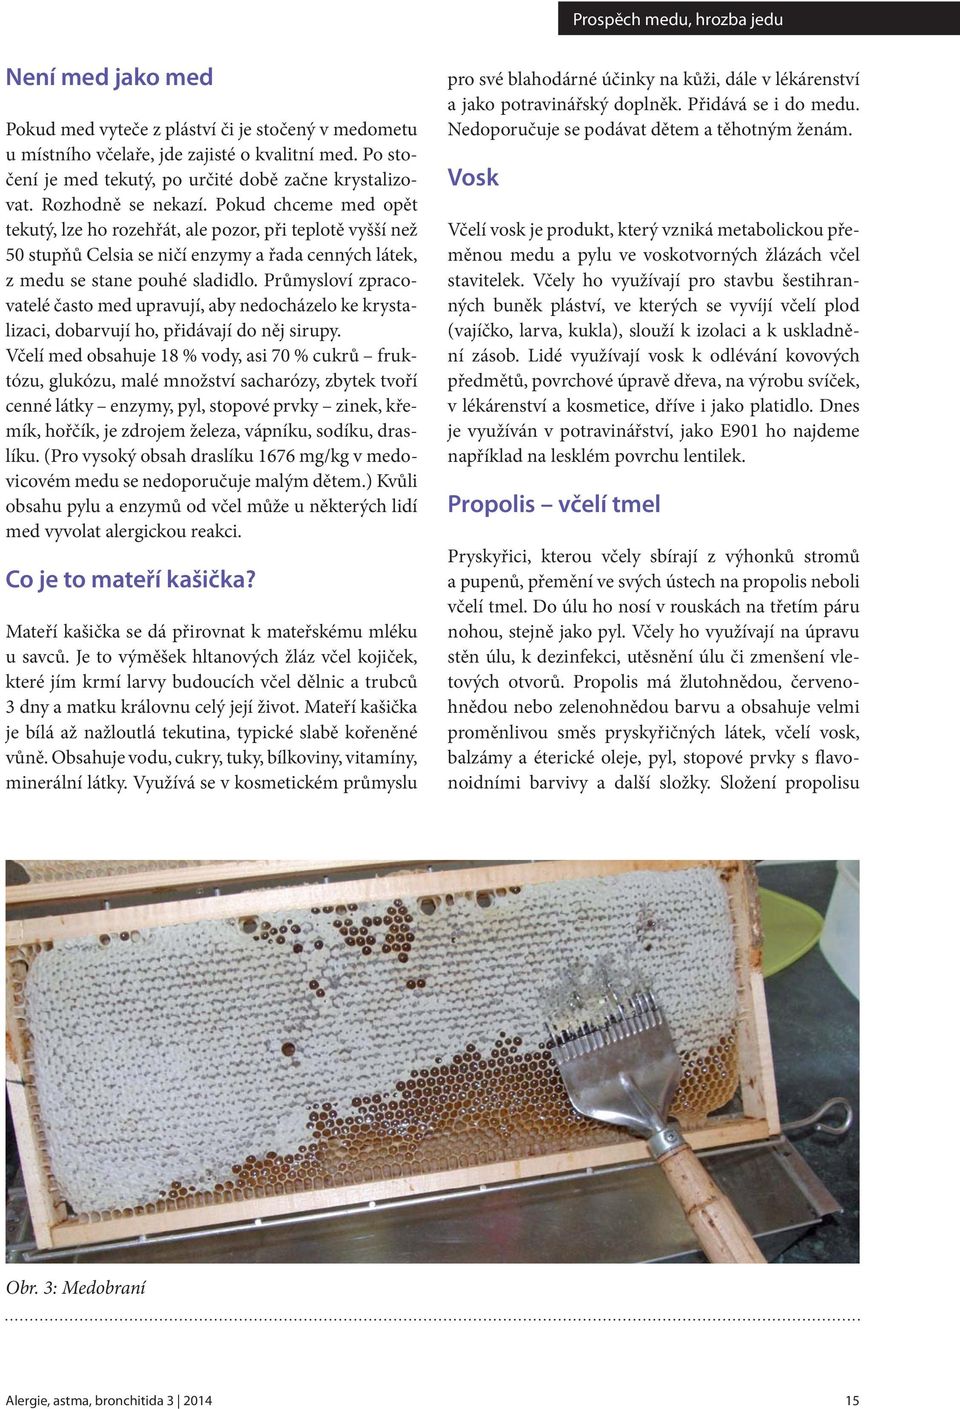 Průmysloví zpracovatelé často med upravují, aby nedocházelo ke krystalizaci, dobarvují ho, přidávají do něj sirupy.